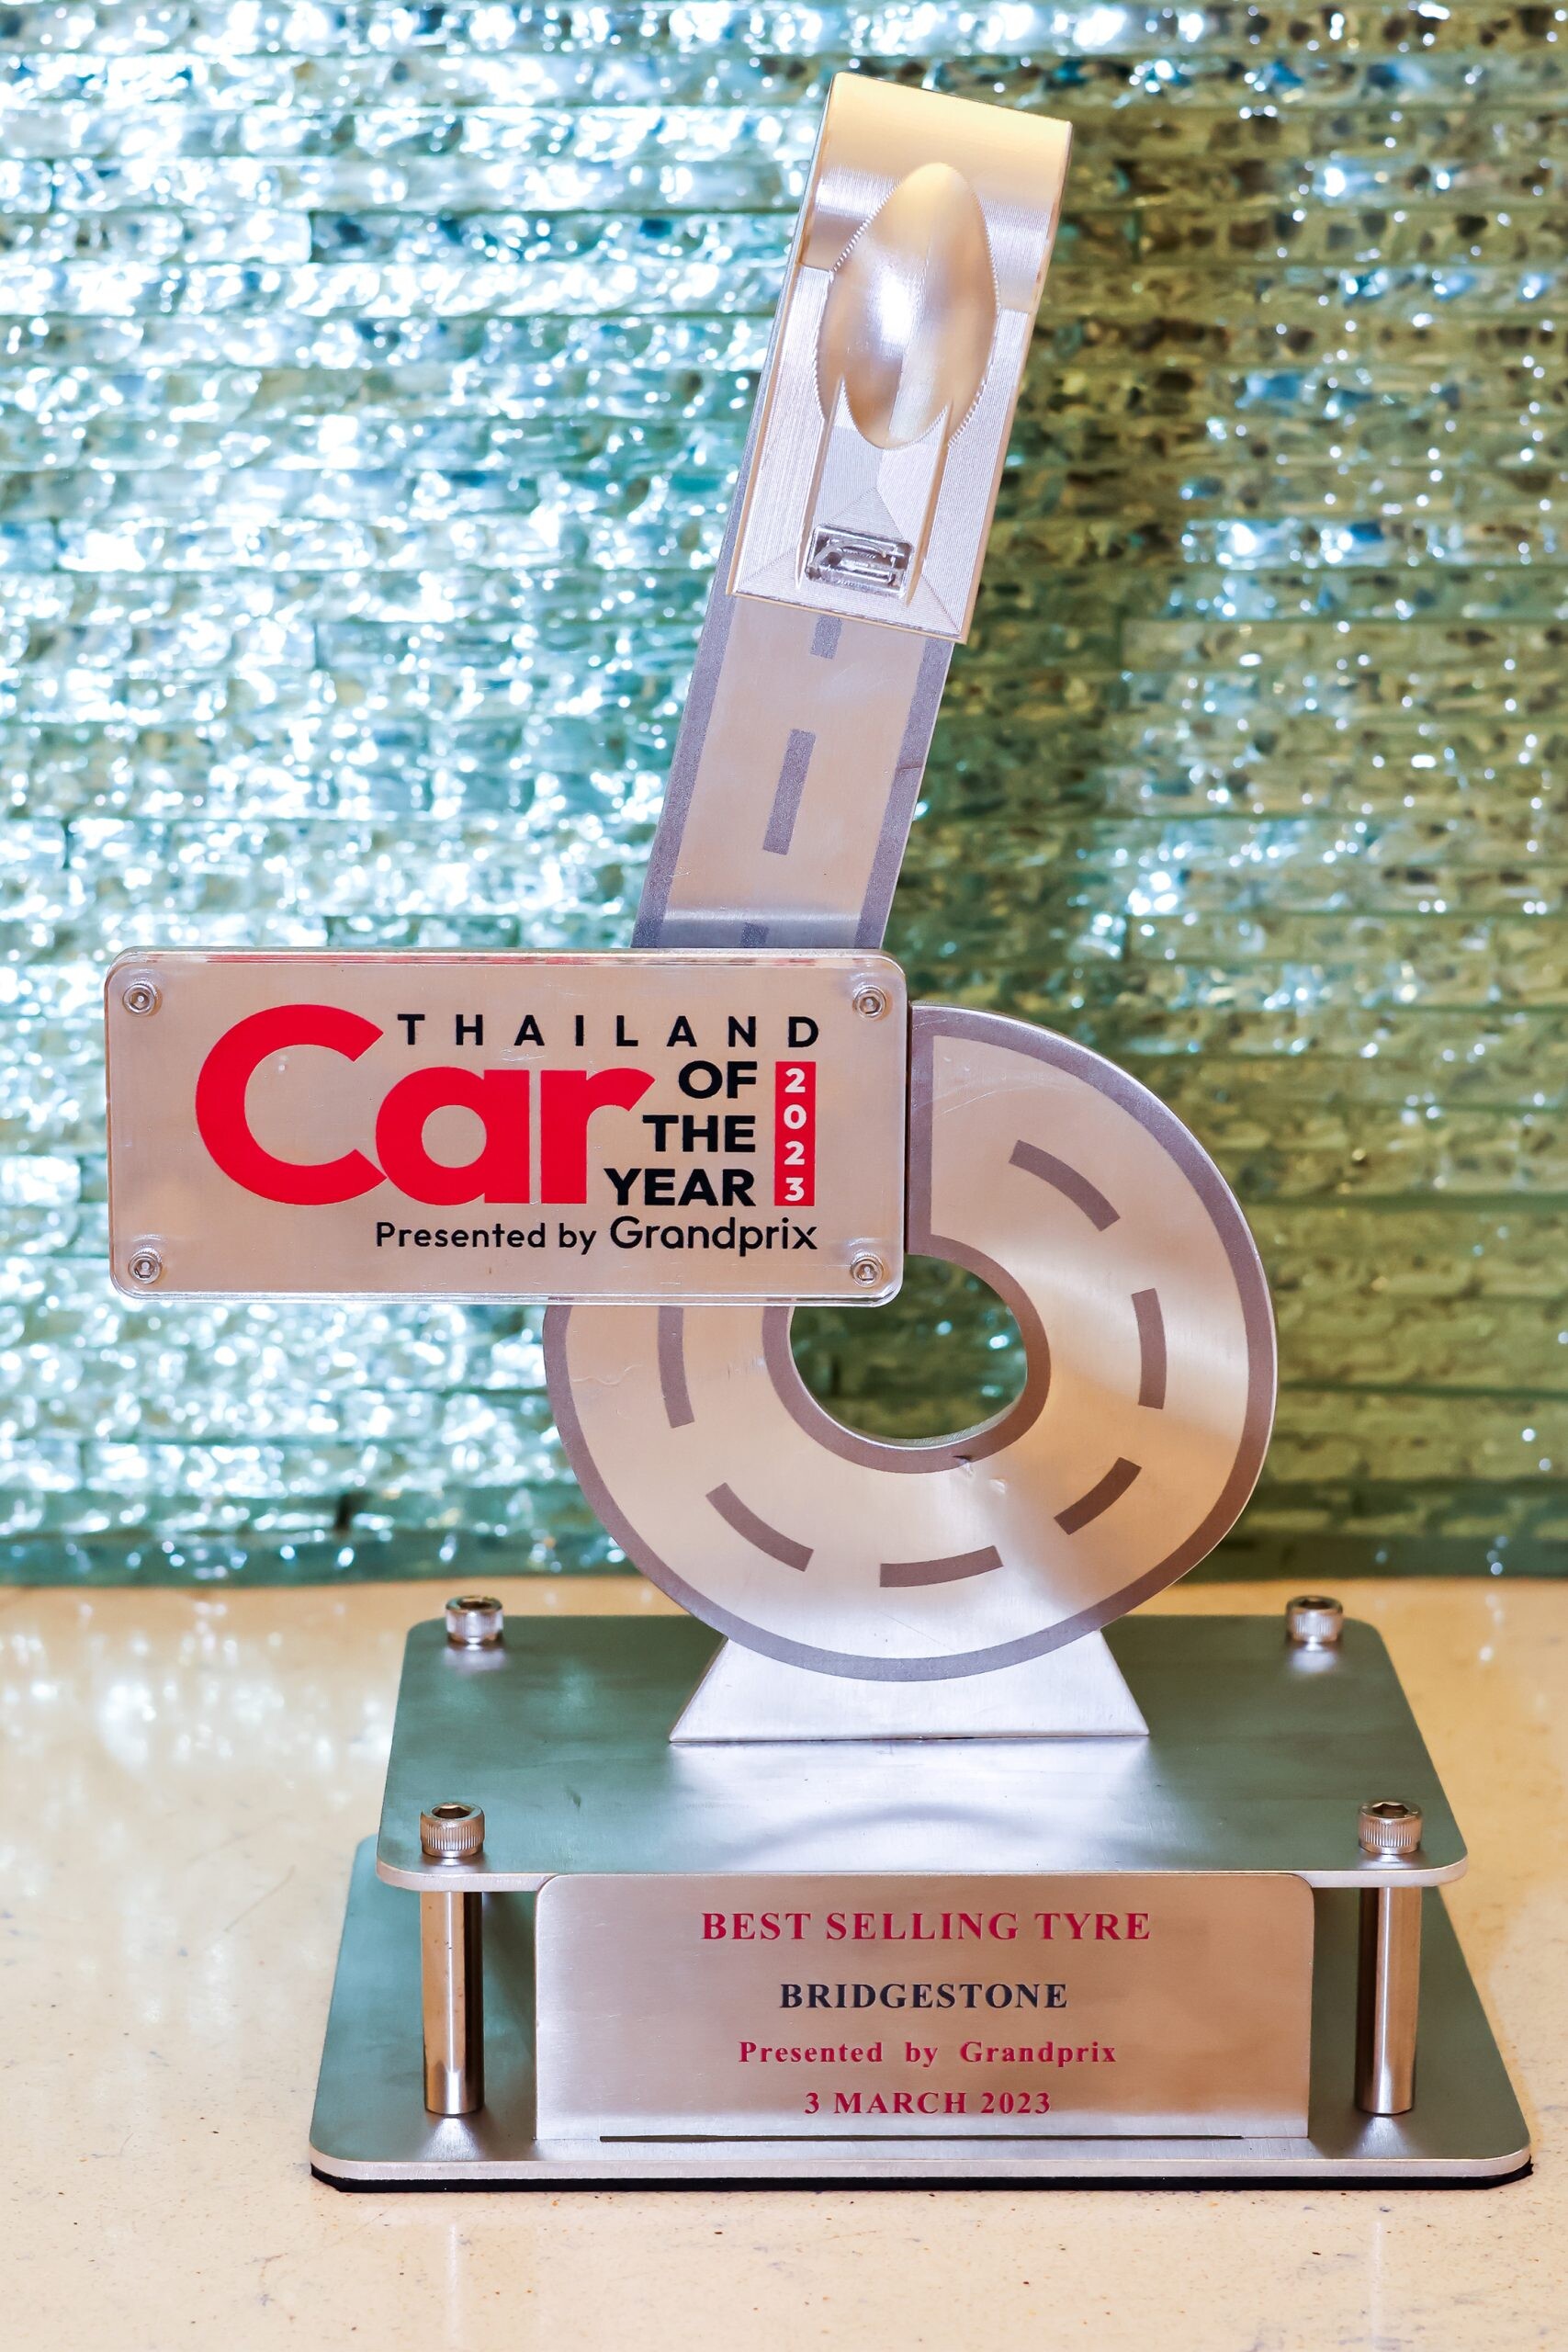 บริดจสโตนครองความแข็งแกร่งของแบรนด์ในตลาดยางรถยนต์ คว้ารางวัล "BEST SELLING TYRE โดยกรังด์ปรีซ์" ต่อเนื่องเป็นปีที่ 25